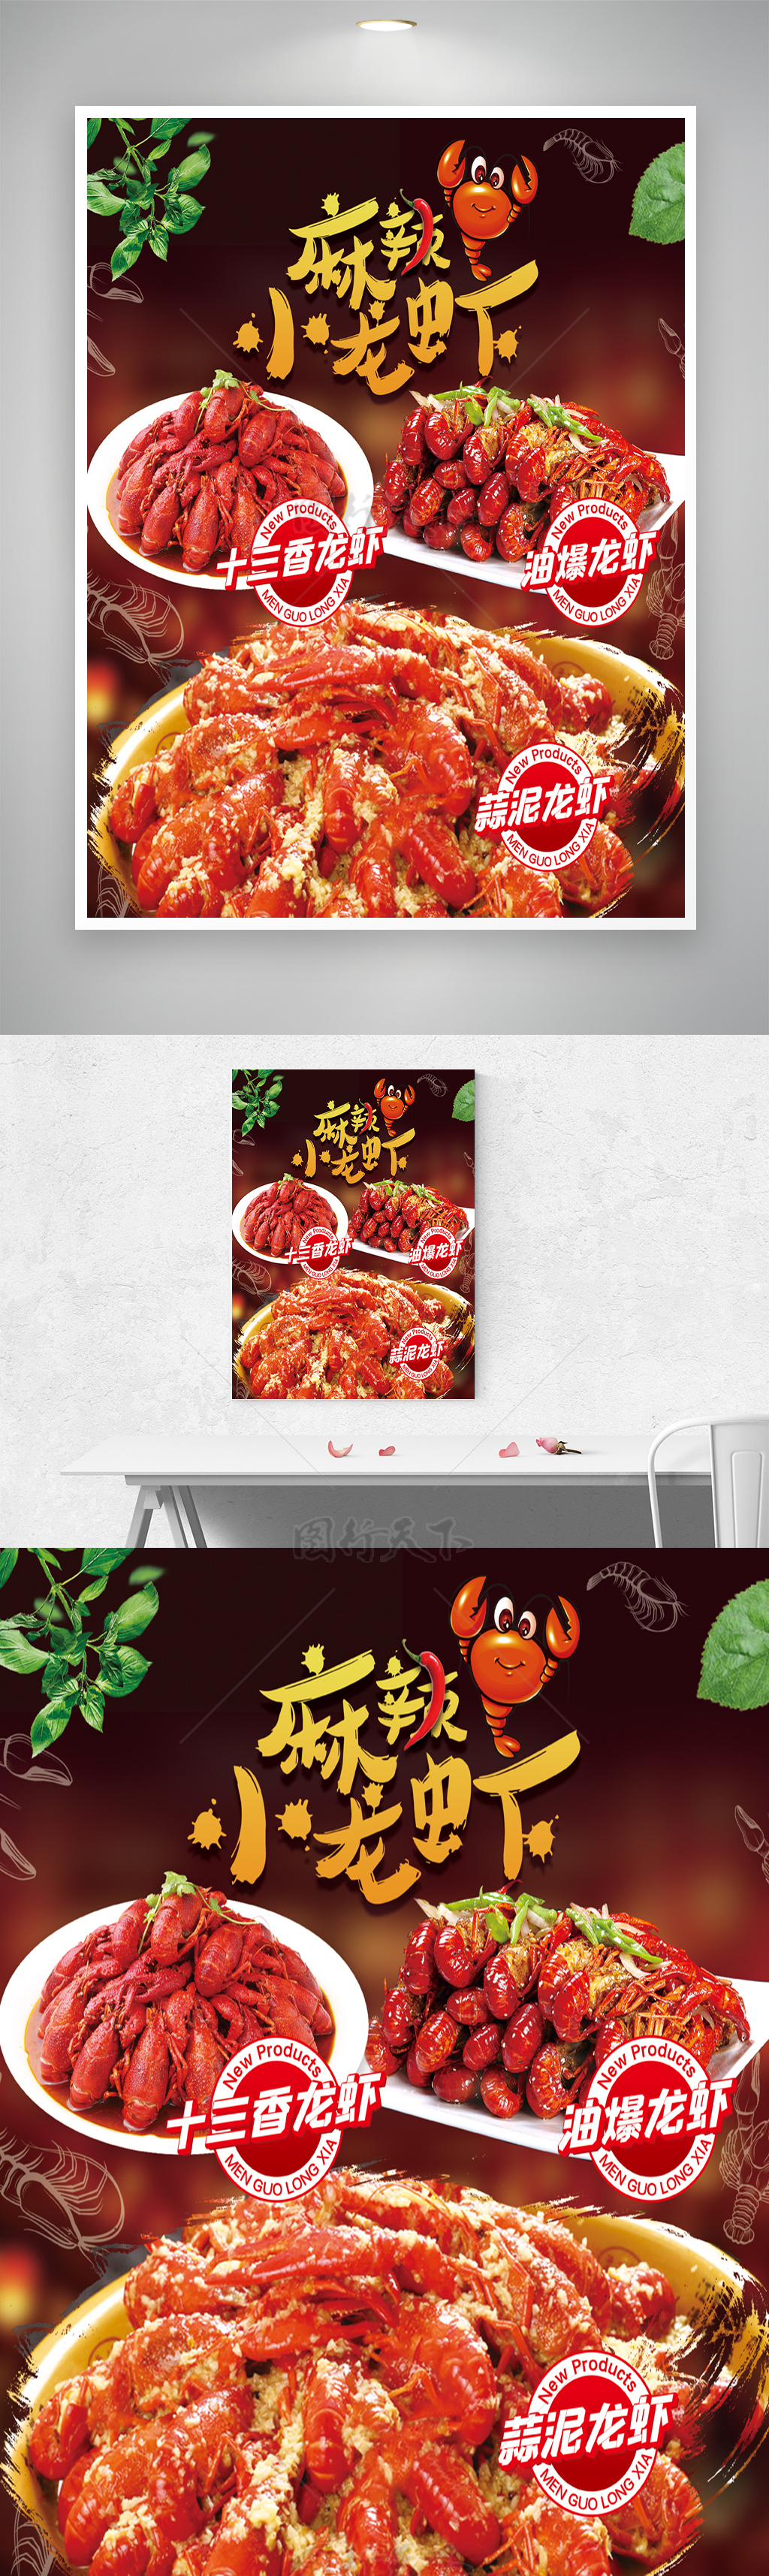 美味飘香龙虾美食活动宣传海报